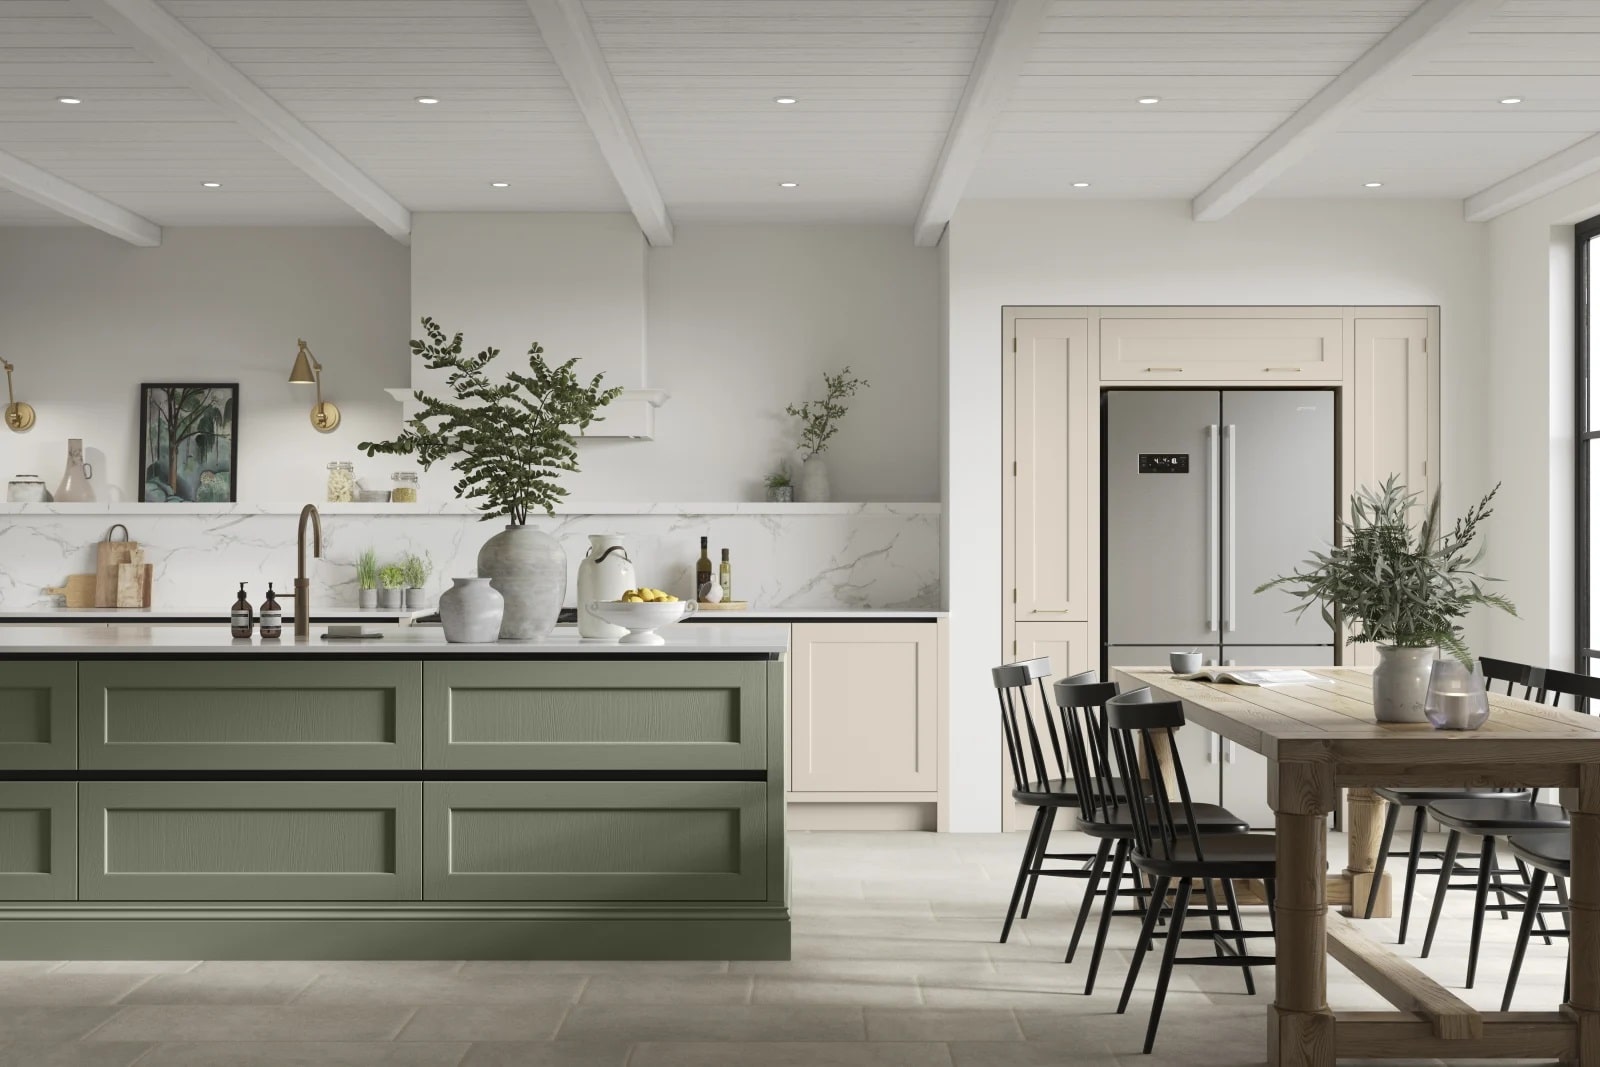 رنگ سبز تیره و سفید برای کابینت بزرگ آشپزخانه